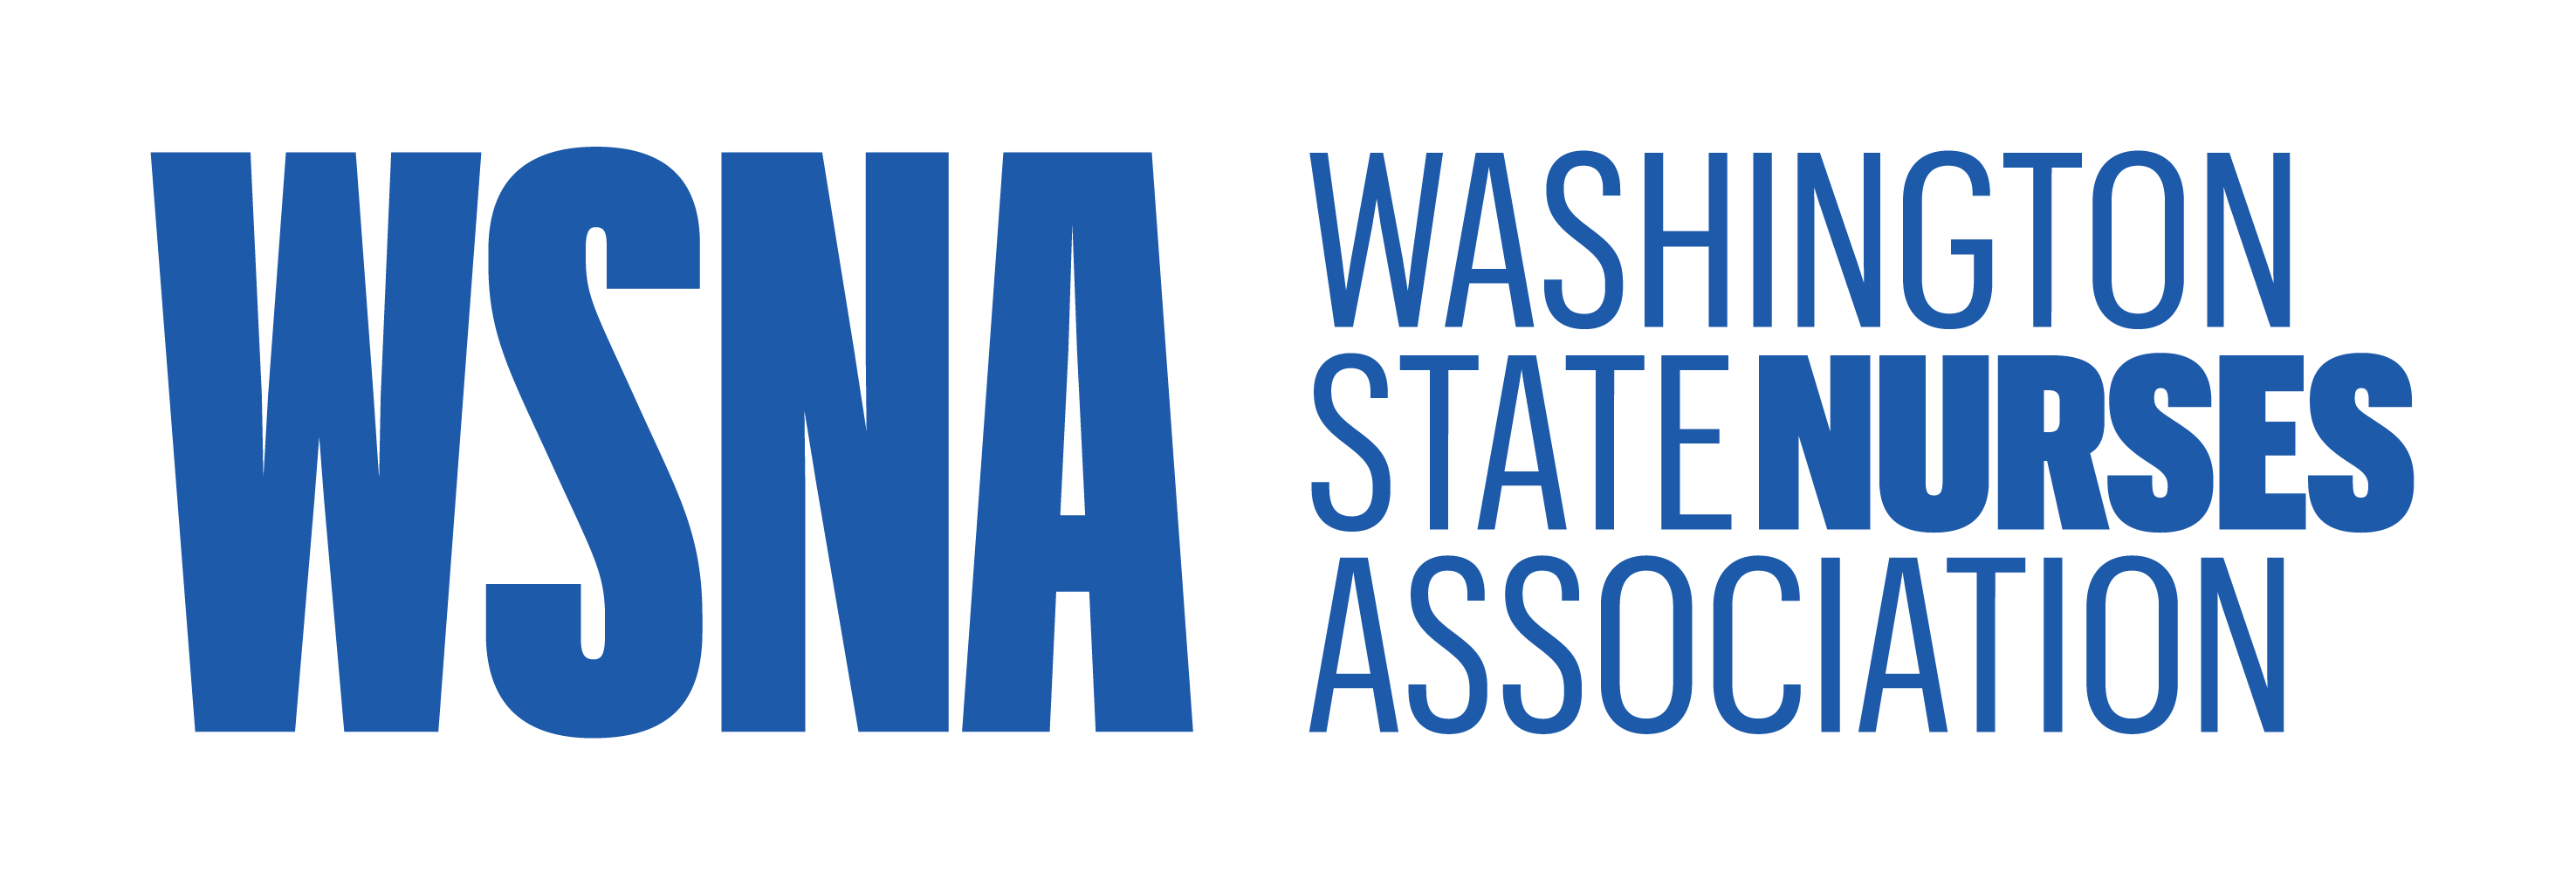 Washington State Nurses Assocation logo